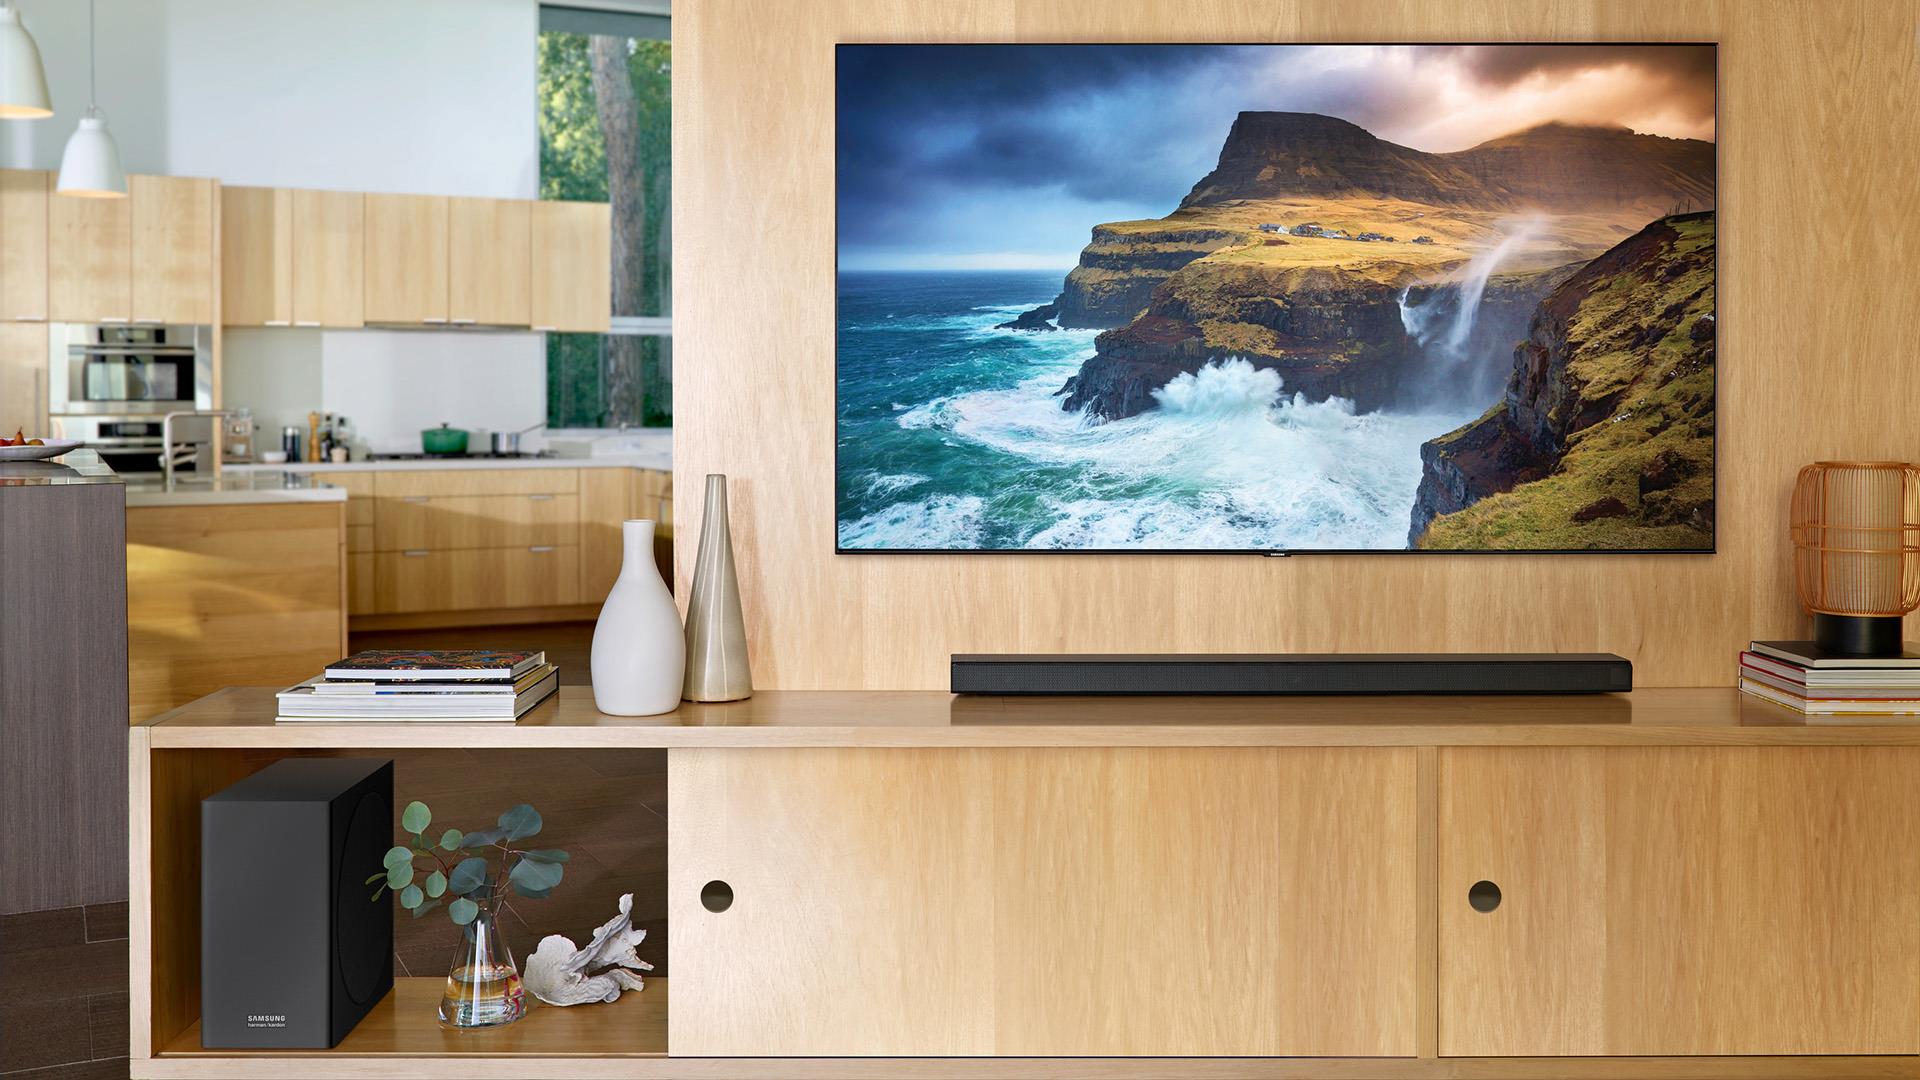 Mua TV lớn hơn 10 inch với giá không đổi, chương trình hấp dẫn từ Samsung - Ảnh 5.